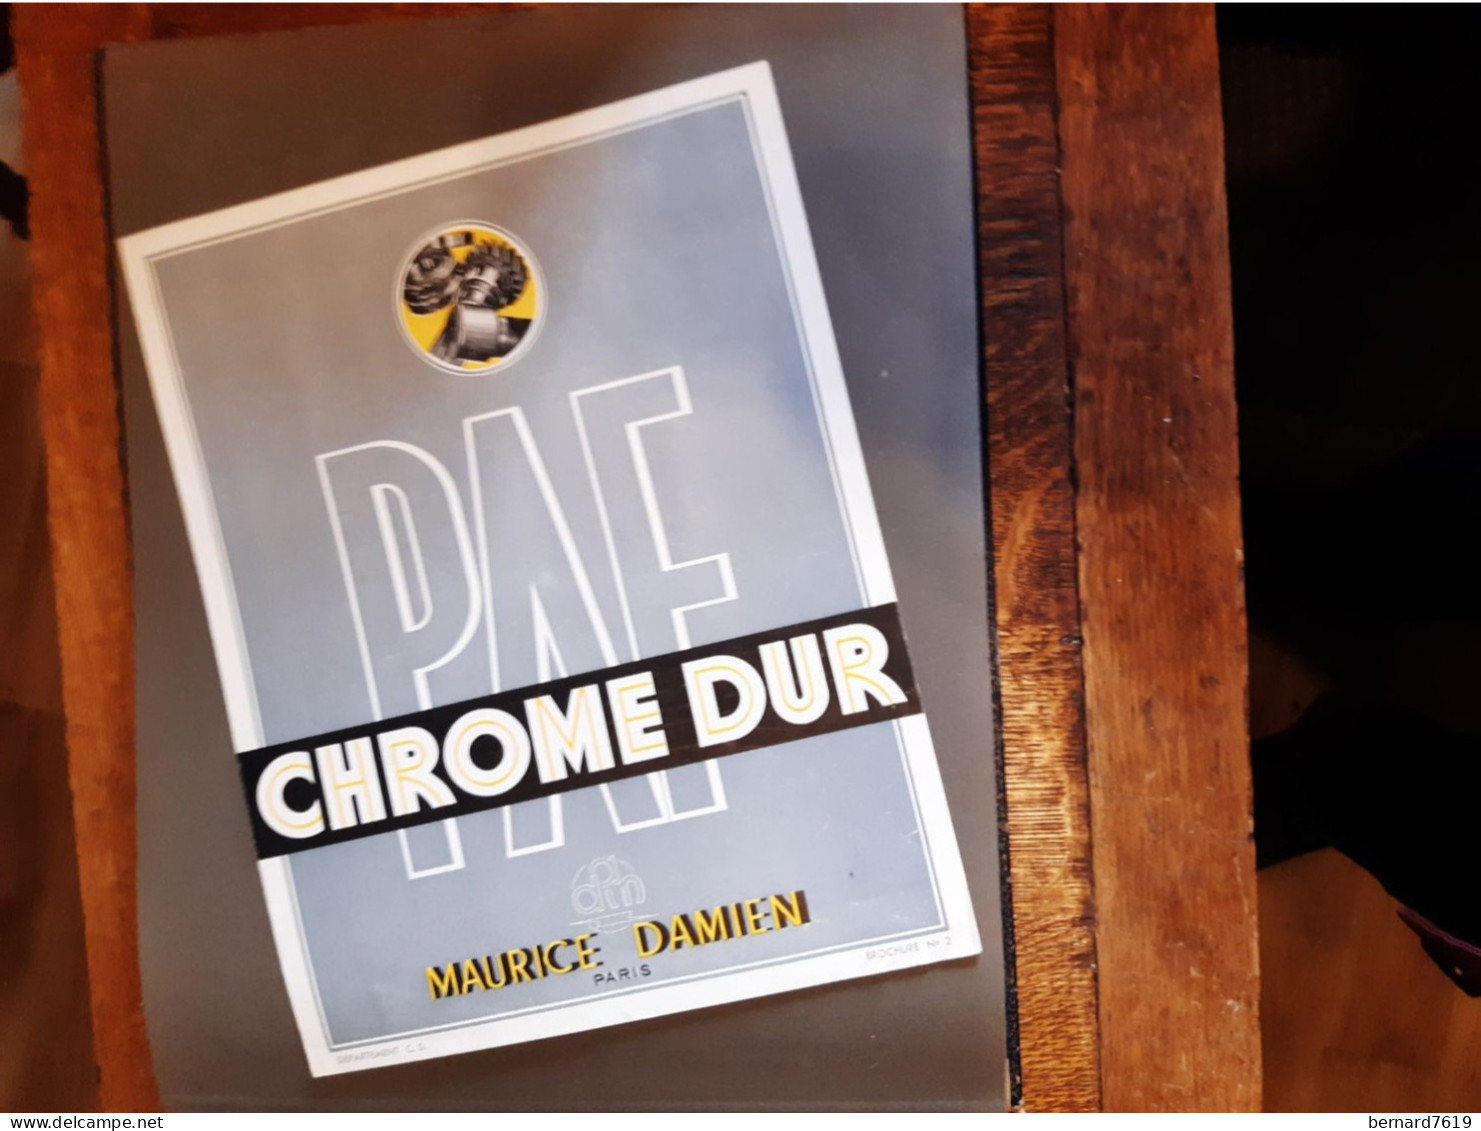 Publicite Annee Vers  1950 - Chrome Dur  Maurice Damien Paris - Byrrh - La Telephonie Francaise Paris 75011 - Werbung